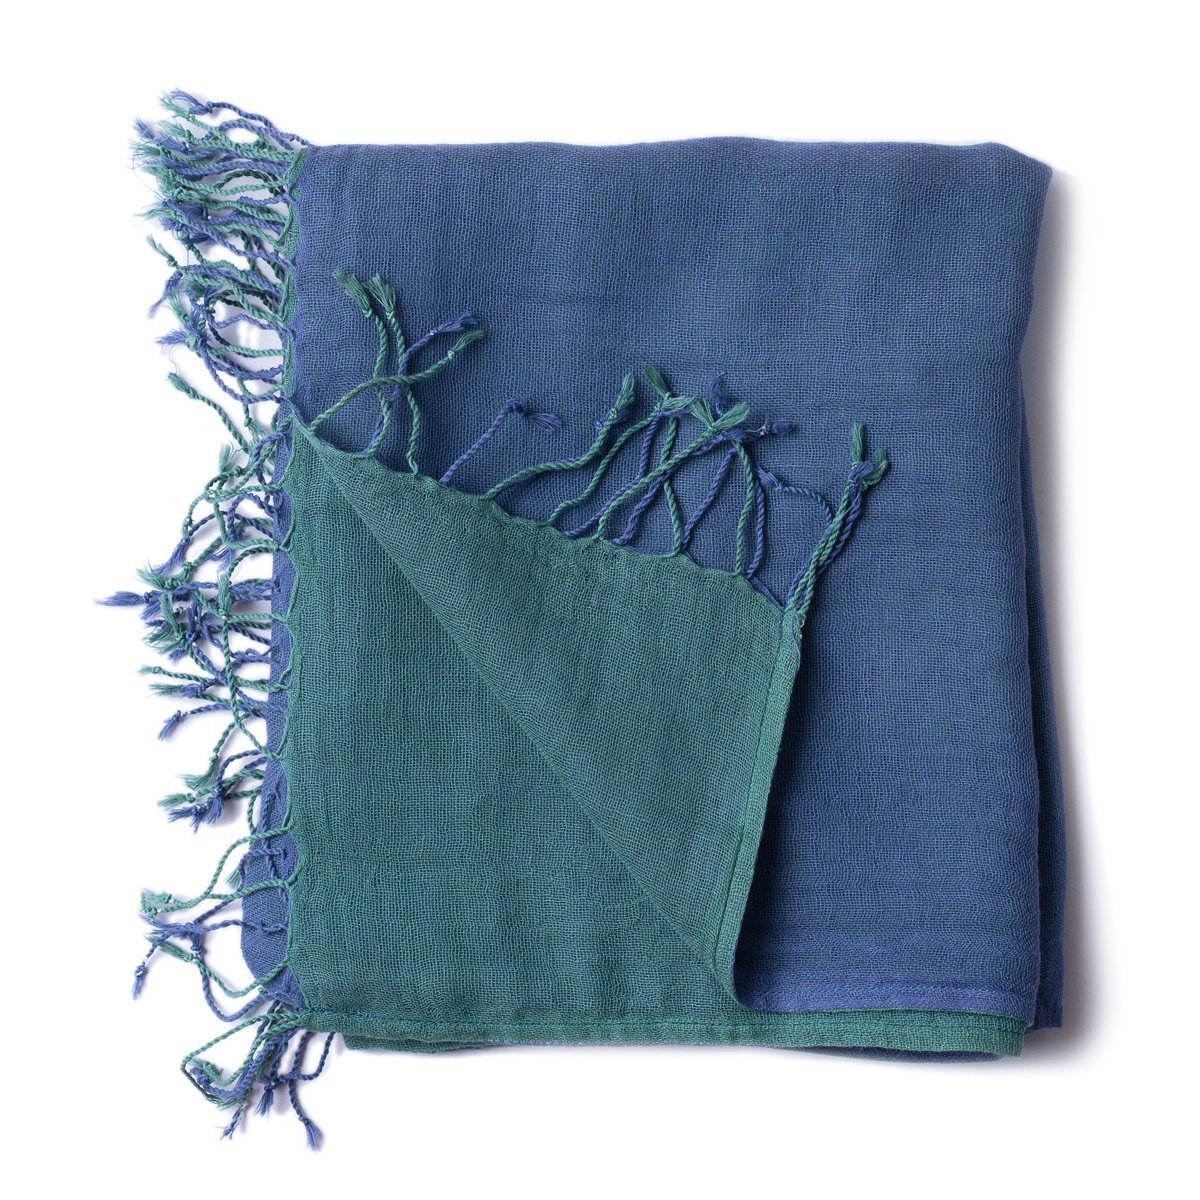 PANASIAM Halstuch elegantes Schultertuch Baumwolle auch kleinen schönen aus in zweifarbig tragbar, Stola blau Designs grün Schal farbigen oder Fransen mit als